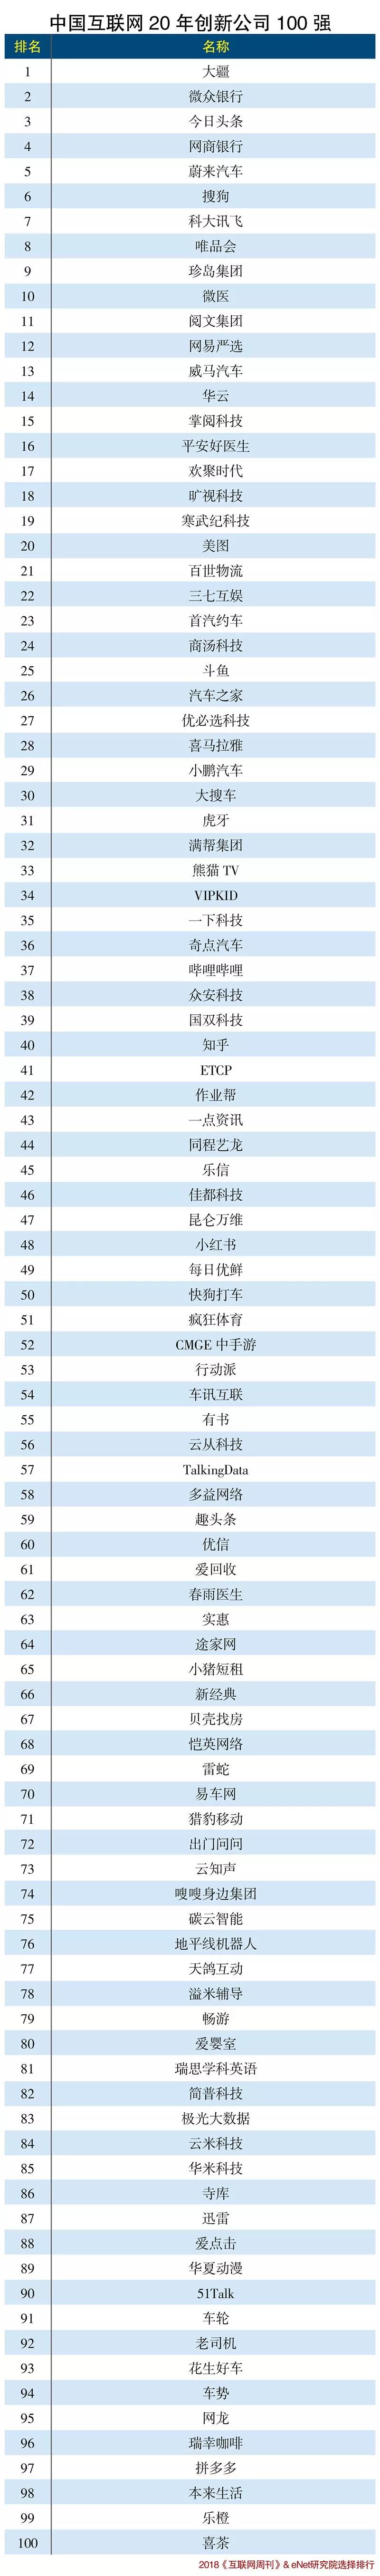 中国互联网20年创新公司100强排名